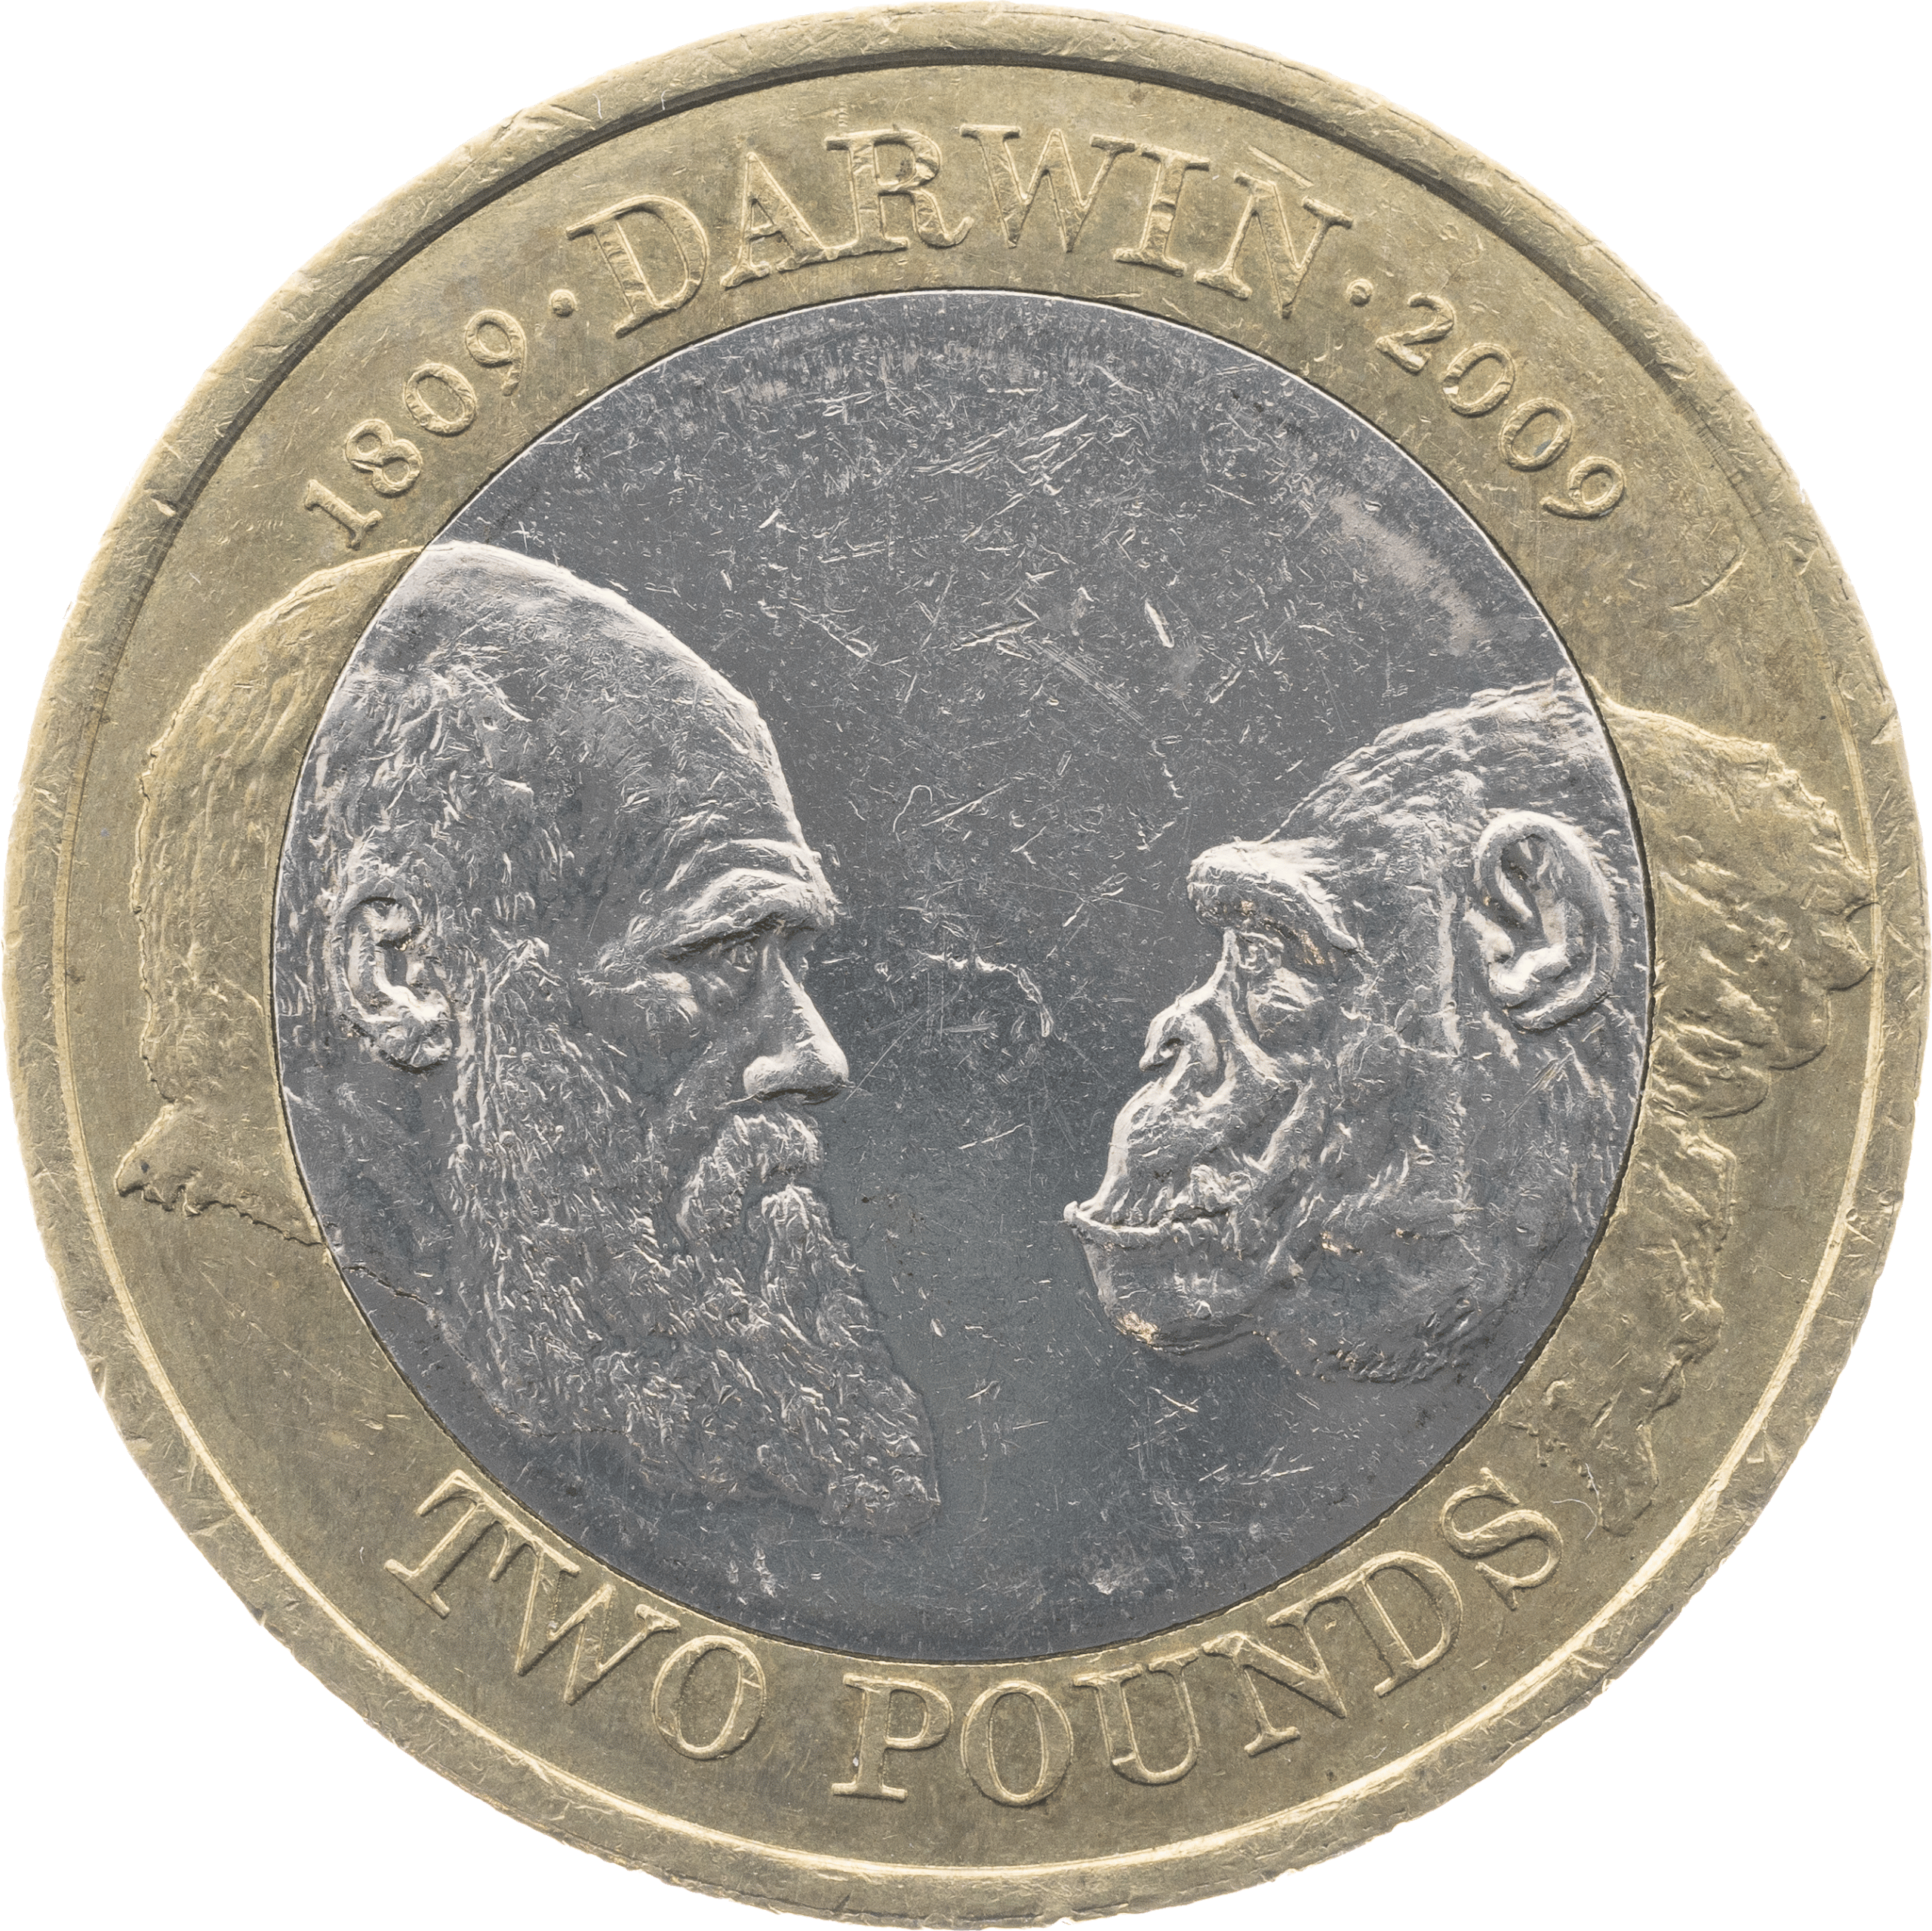 Charles Darwin £2 Coin Design